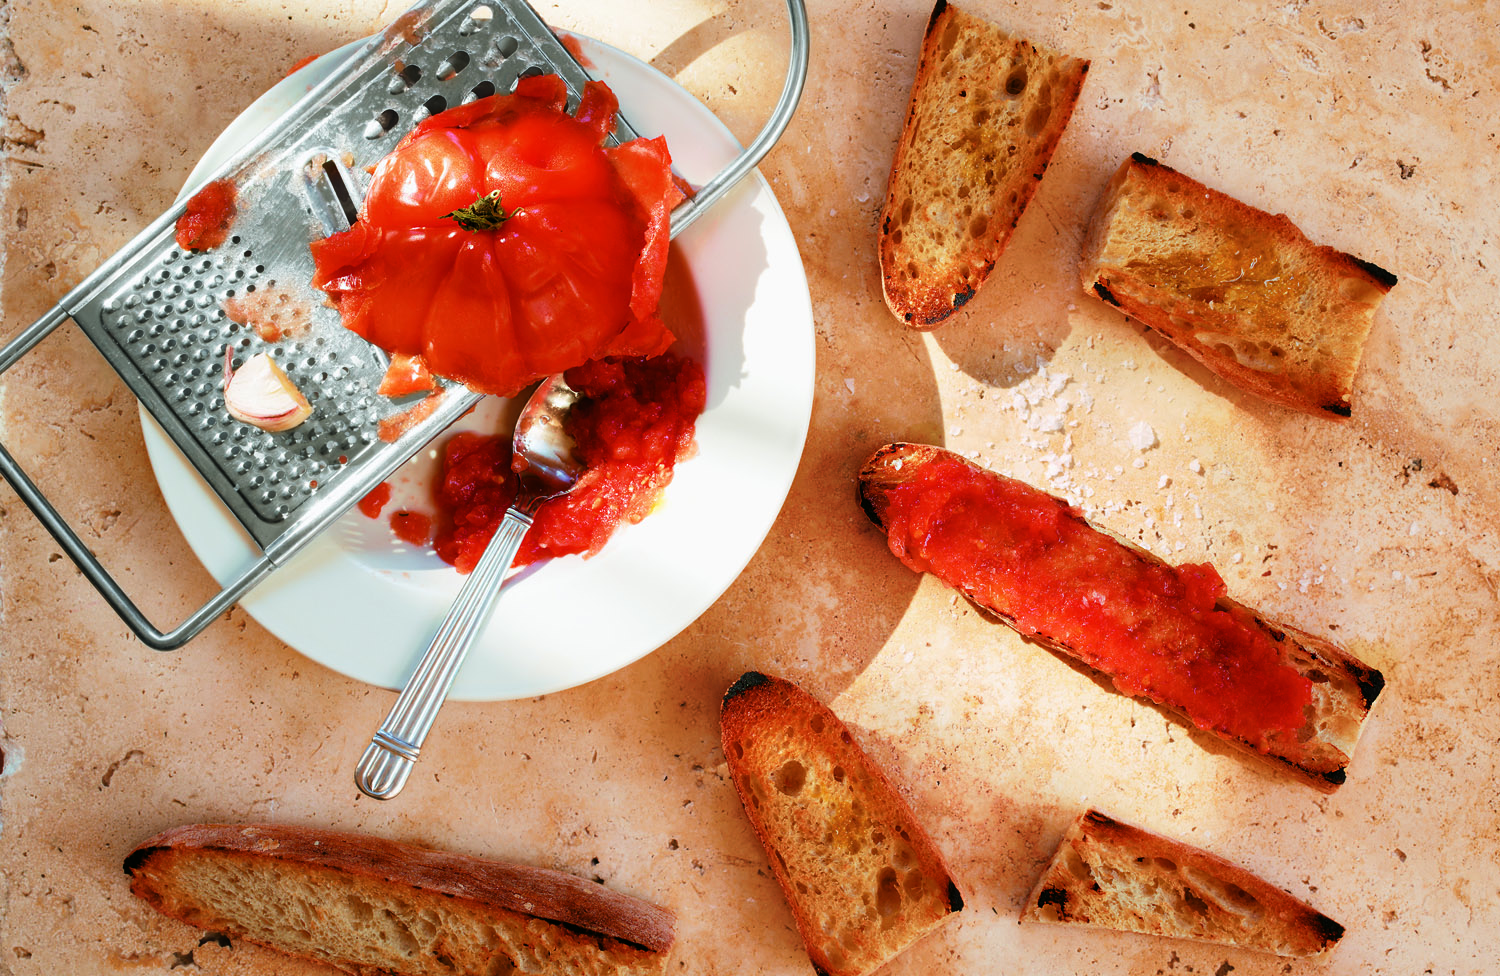 recette classique de pan con tomate ou toast aux tomates avec ail et sel, idée de tapas recette facile a faire